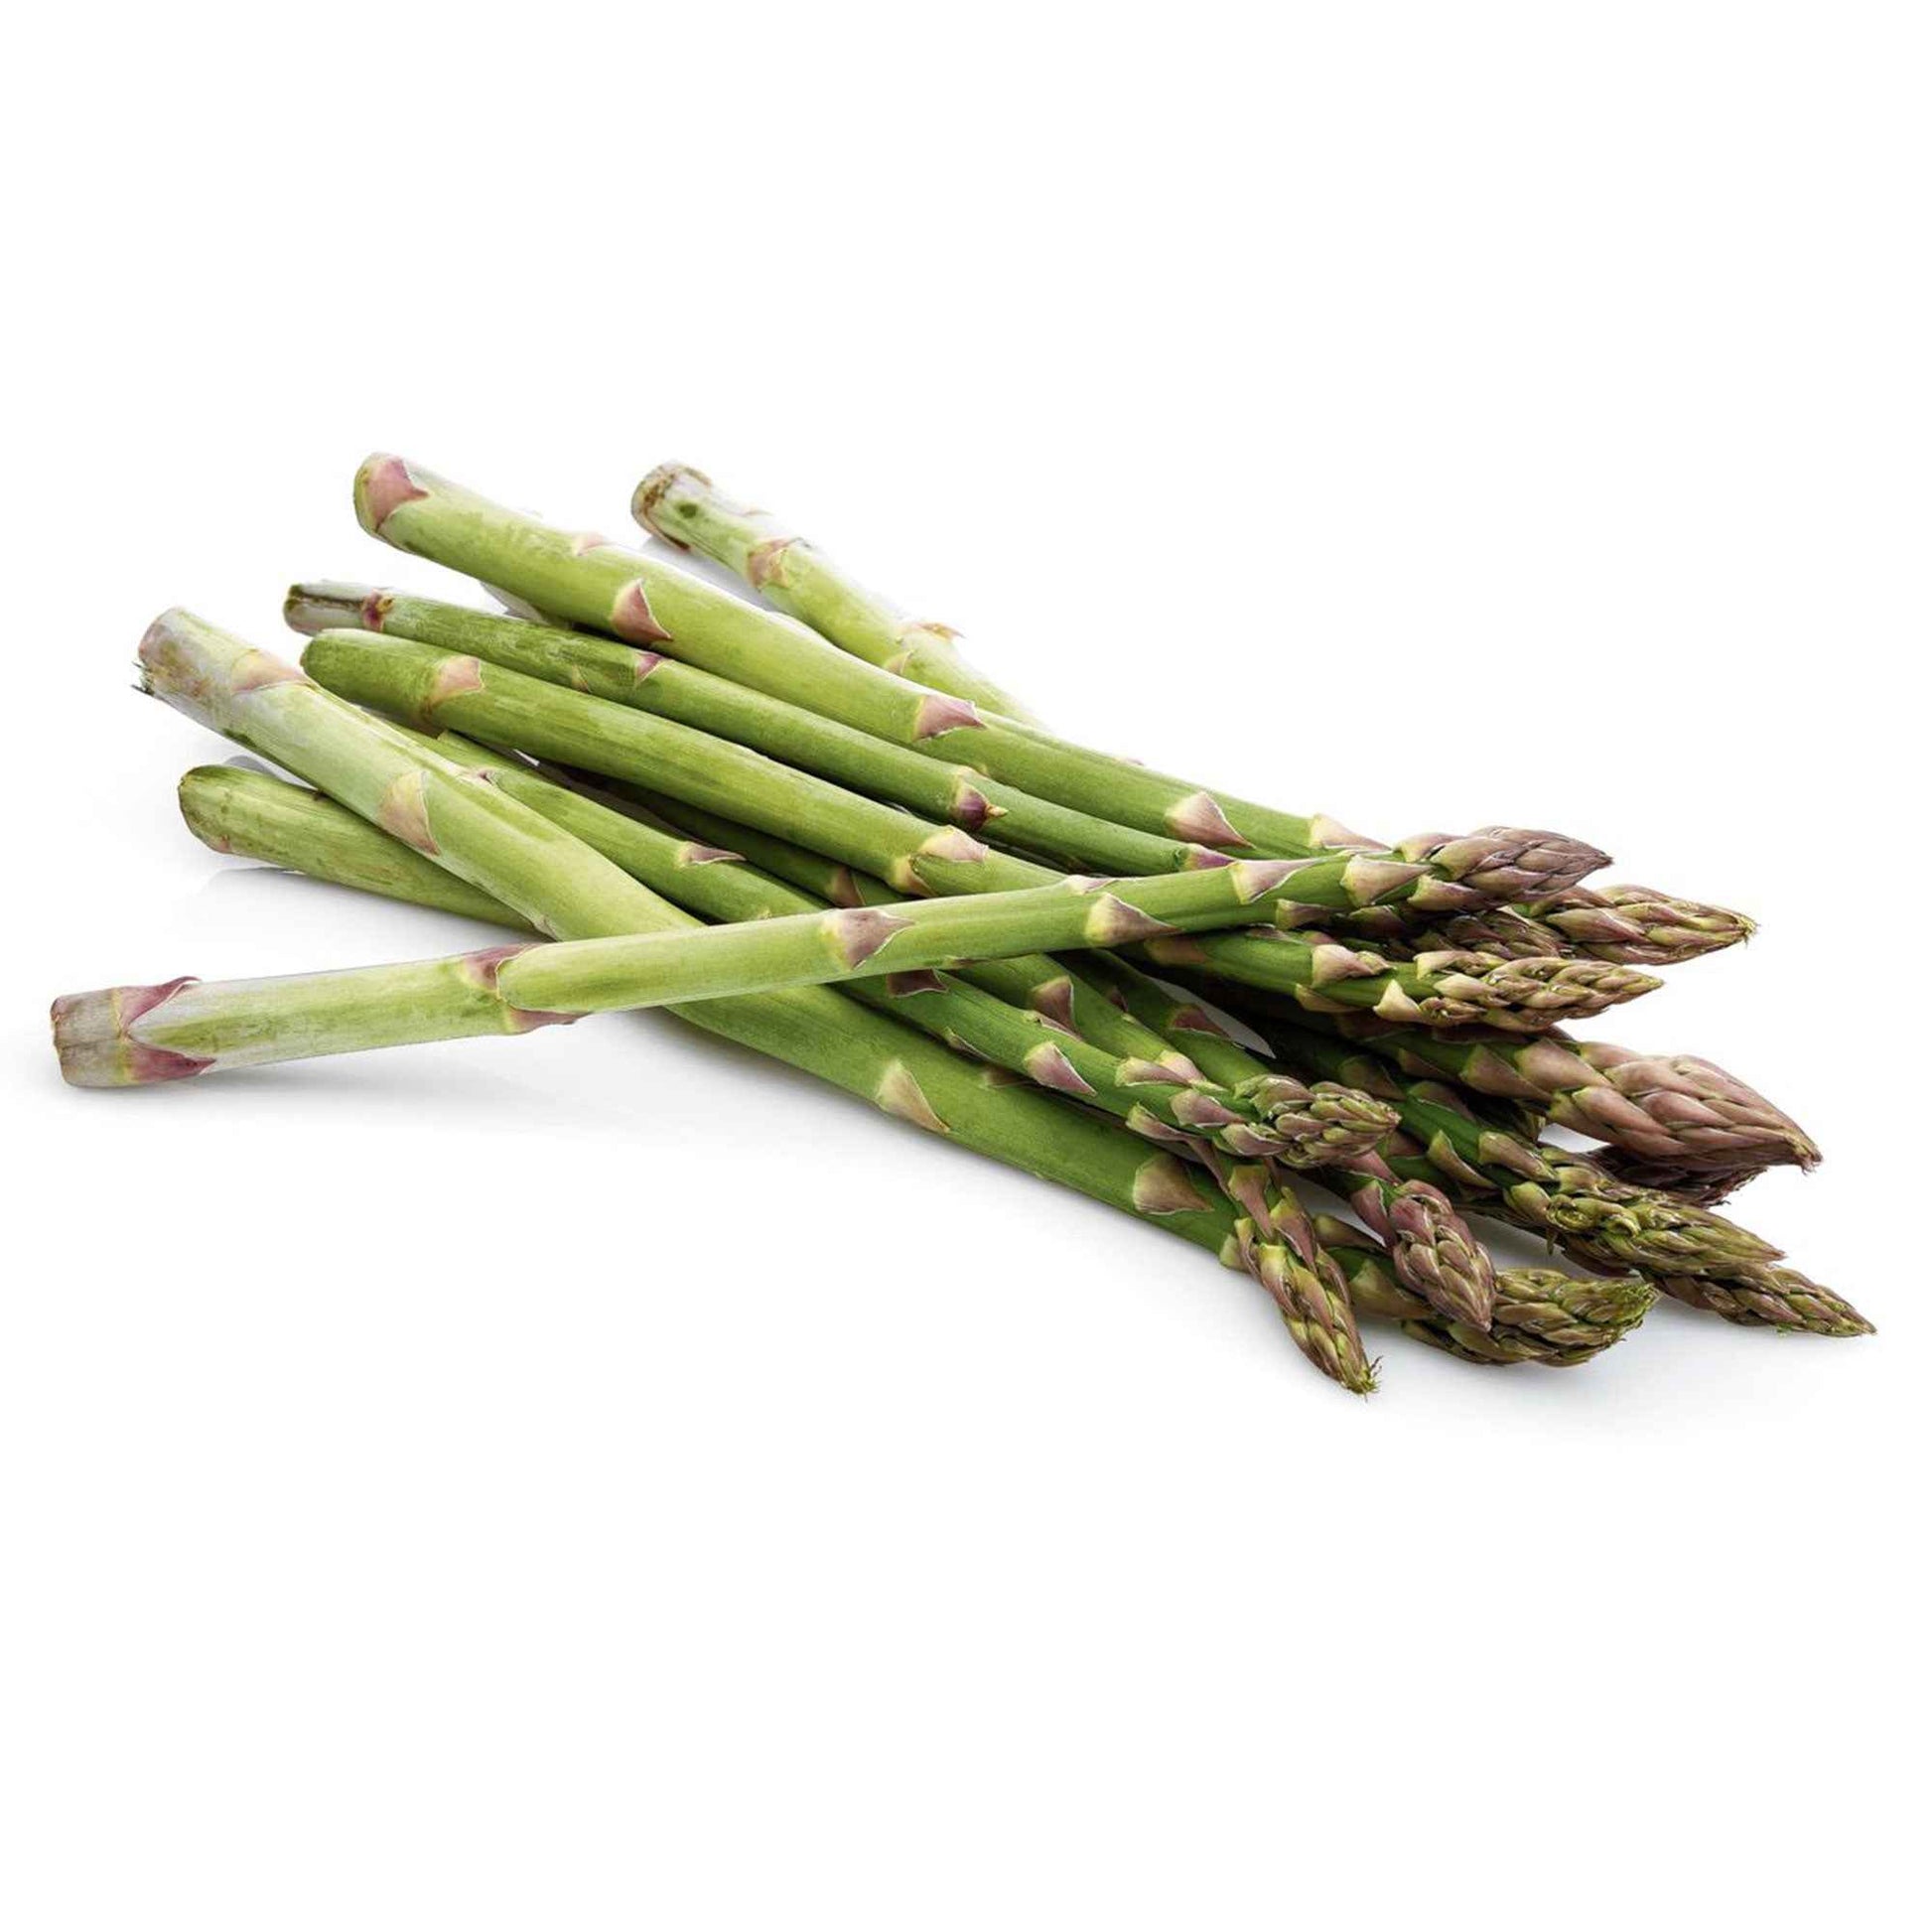 Groene asperge Asparagus kopen | Bakker.com